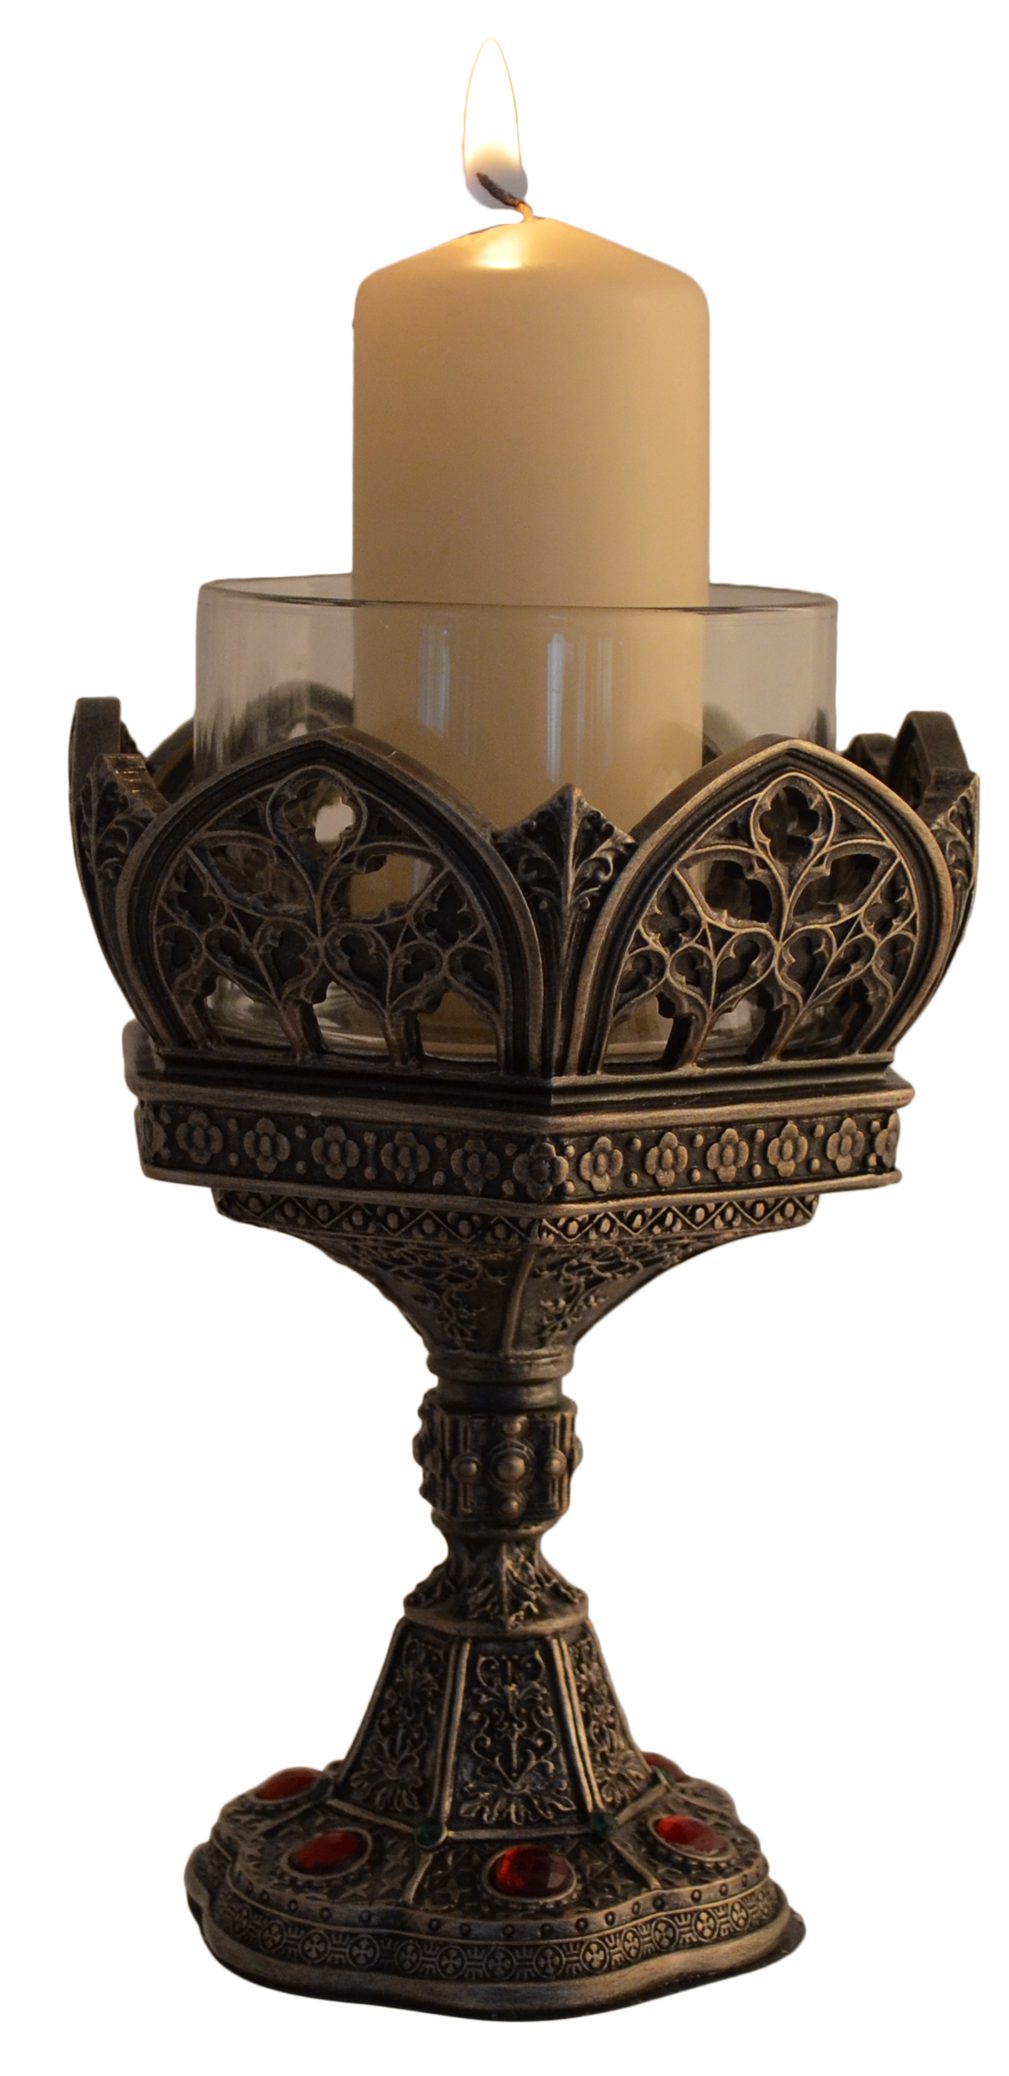 Gmbh wurden von Kerzenständer versilbert, by Veronese, in Details direct - ca. "Kathedrale" LxBxH 11x10x15cm Vogler Kerzenständer Sechseckform Hand